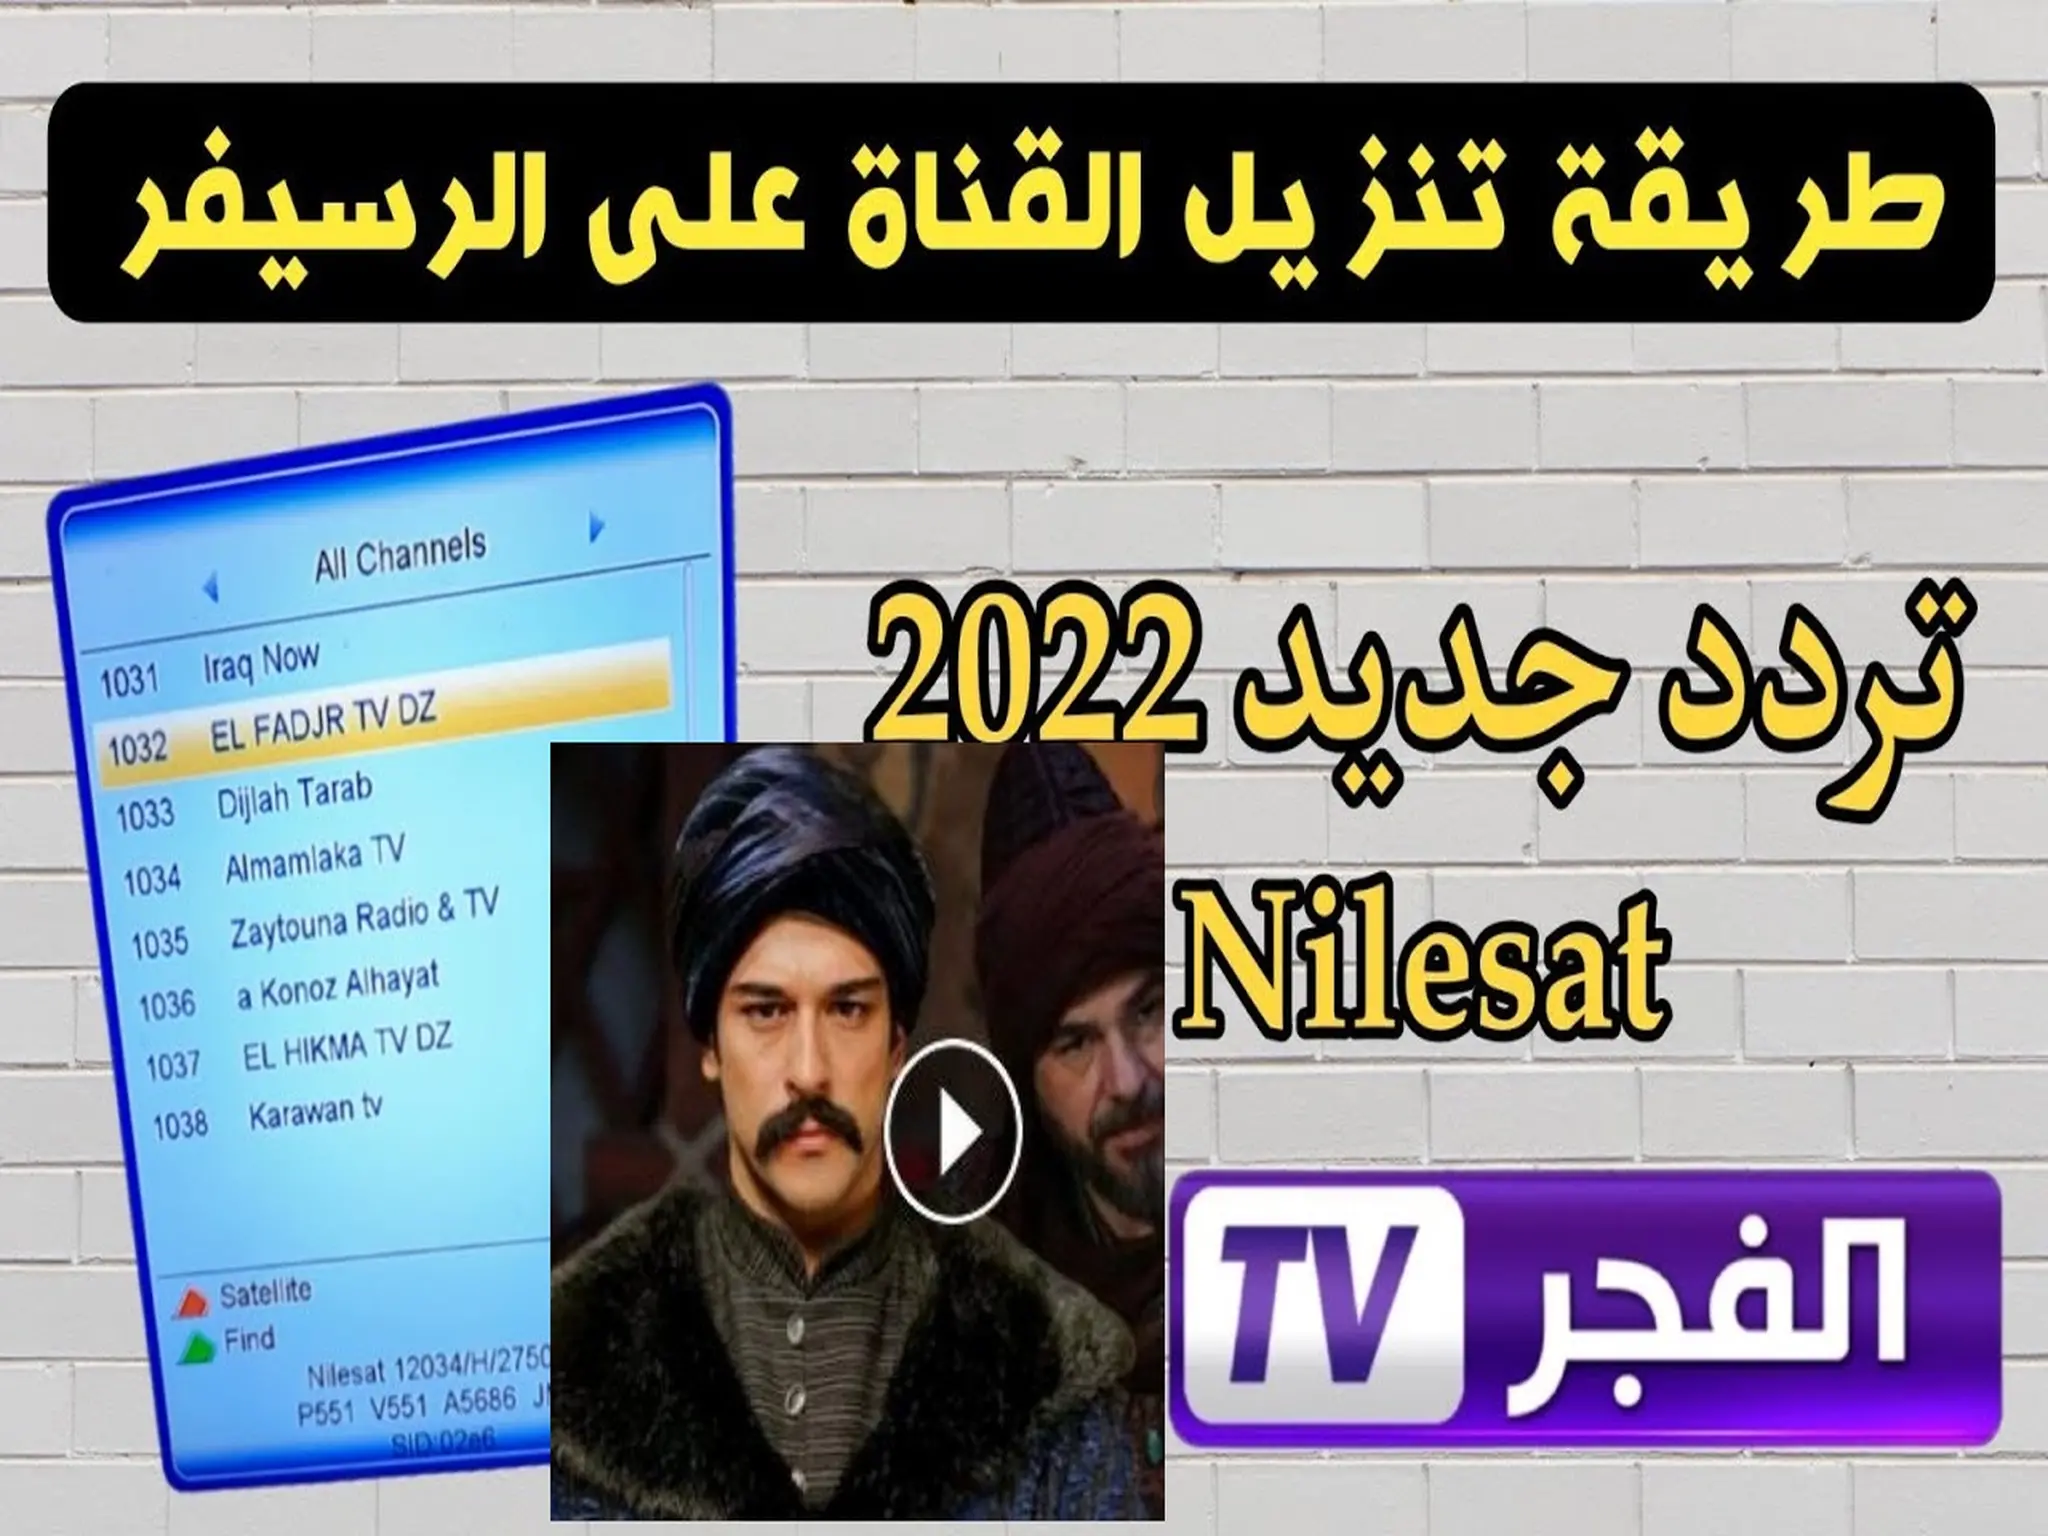 اضبطه الآن.. تردد قناة الفجر الجزائرية El Fadjr TV DZ 2022 نزلها على تلفازك عبر جميع الأقمار واستمتع بالمشاهدة المجانية